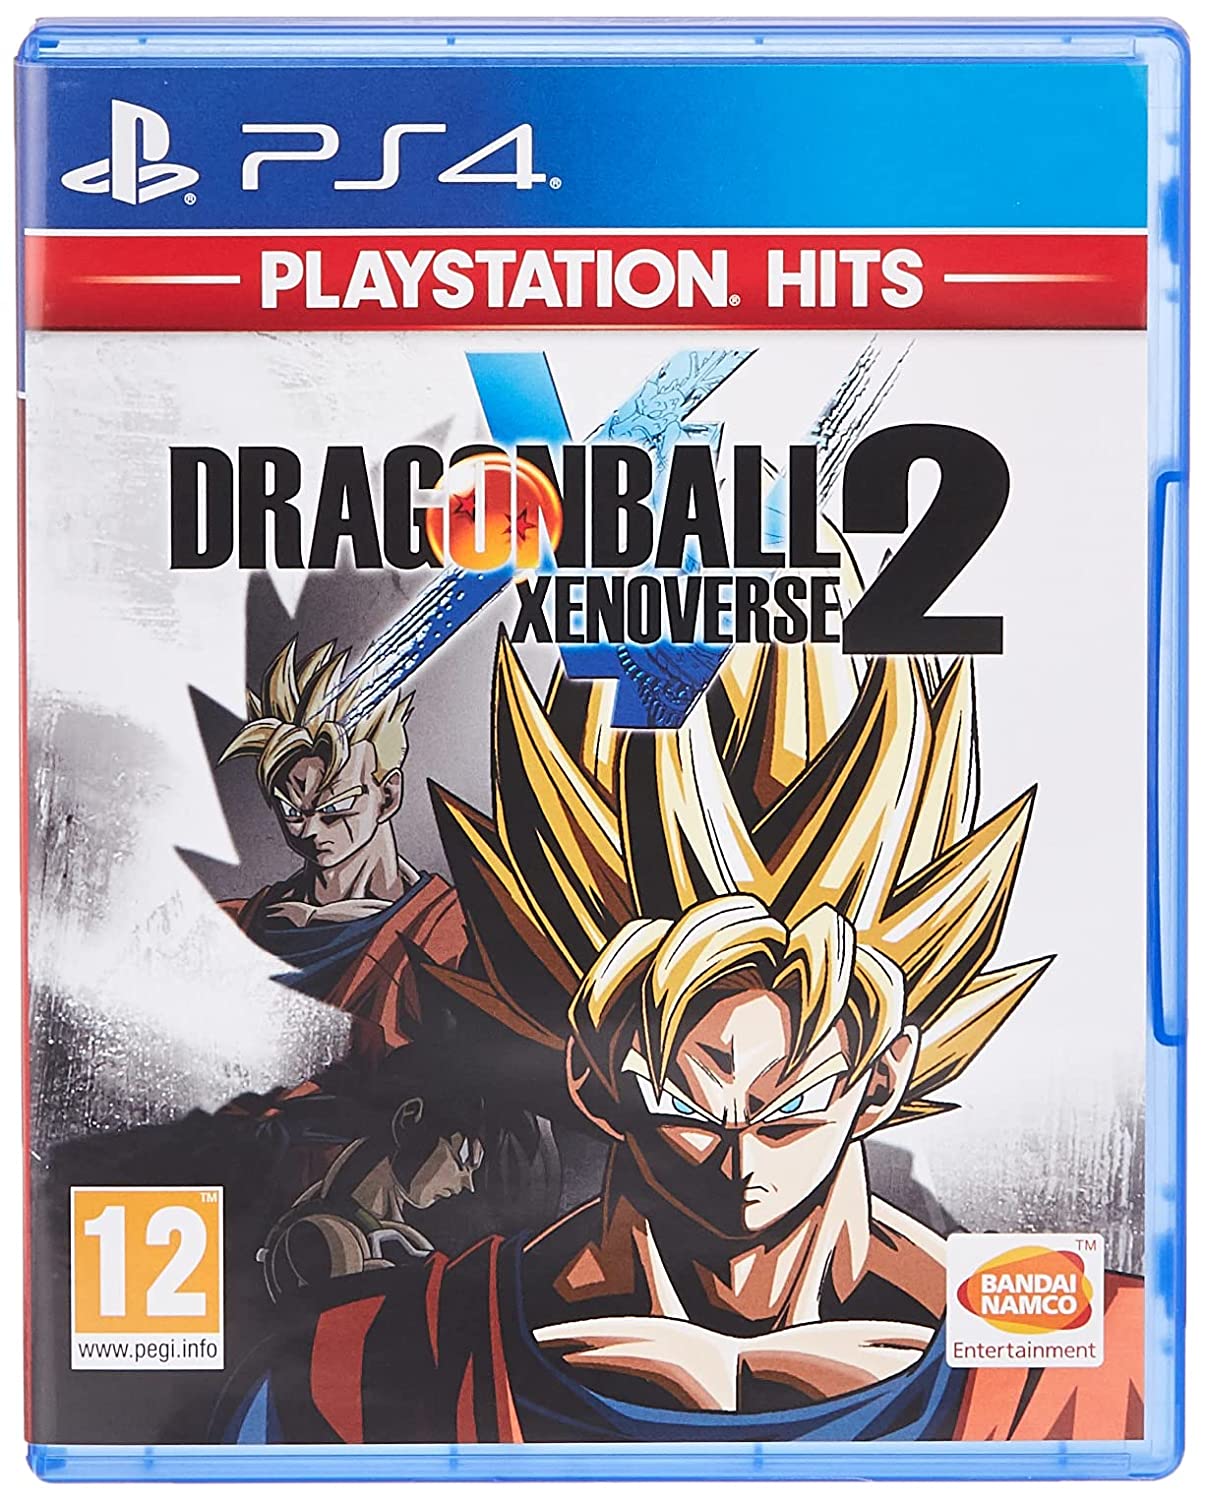 Dragon Ball Xenoverse 2 - PlayStation Hits (PS4)